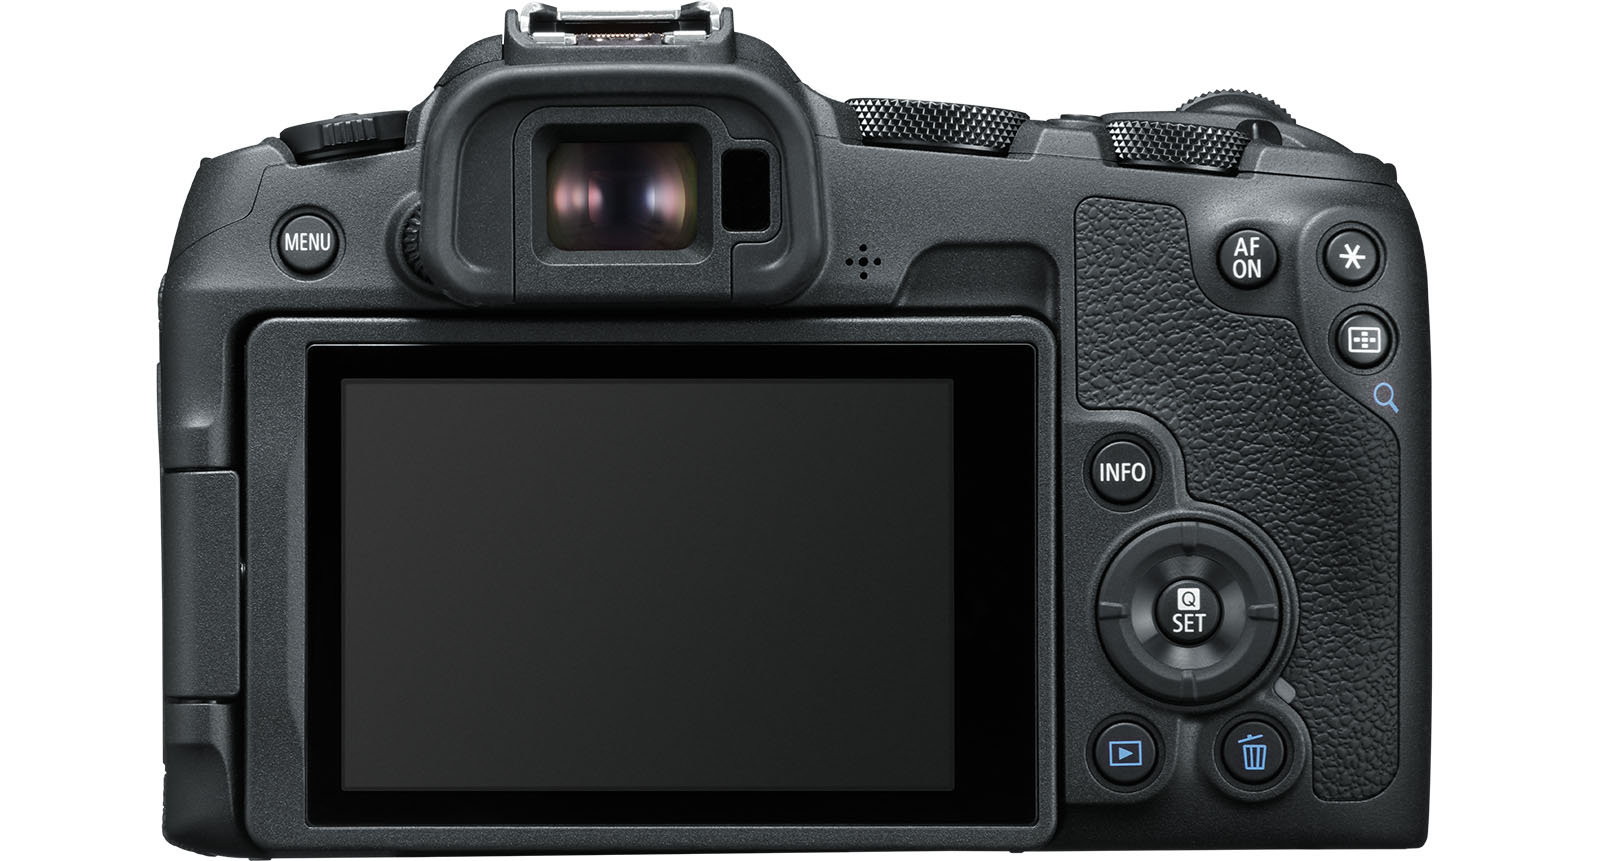 Canon ra mắt máy ảnh EOS R8 mạnh mẽ như R6 II nhưng kích thước gọn hơn